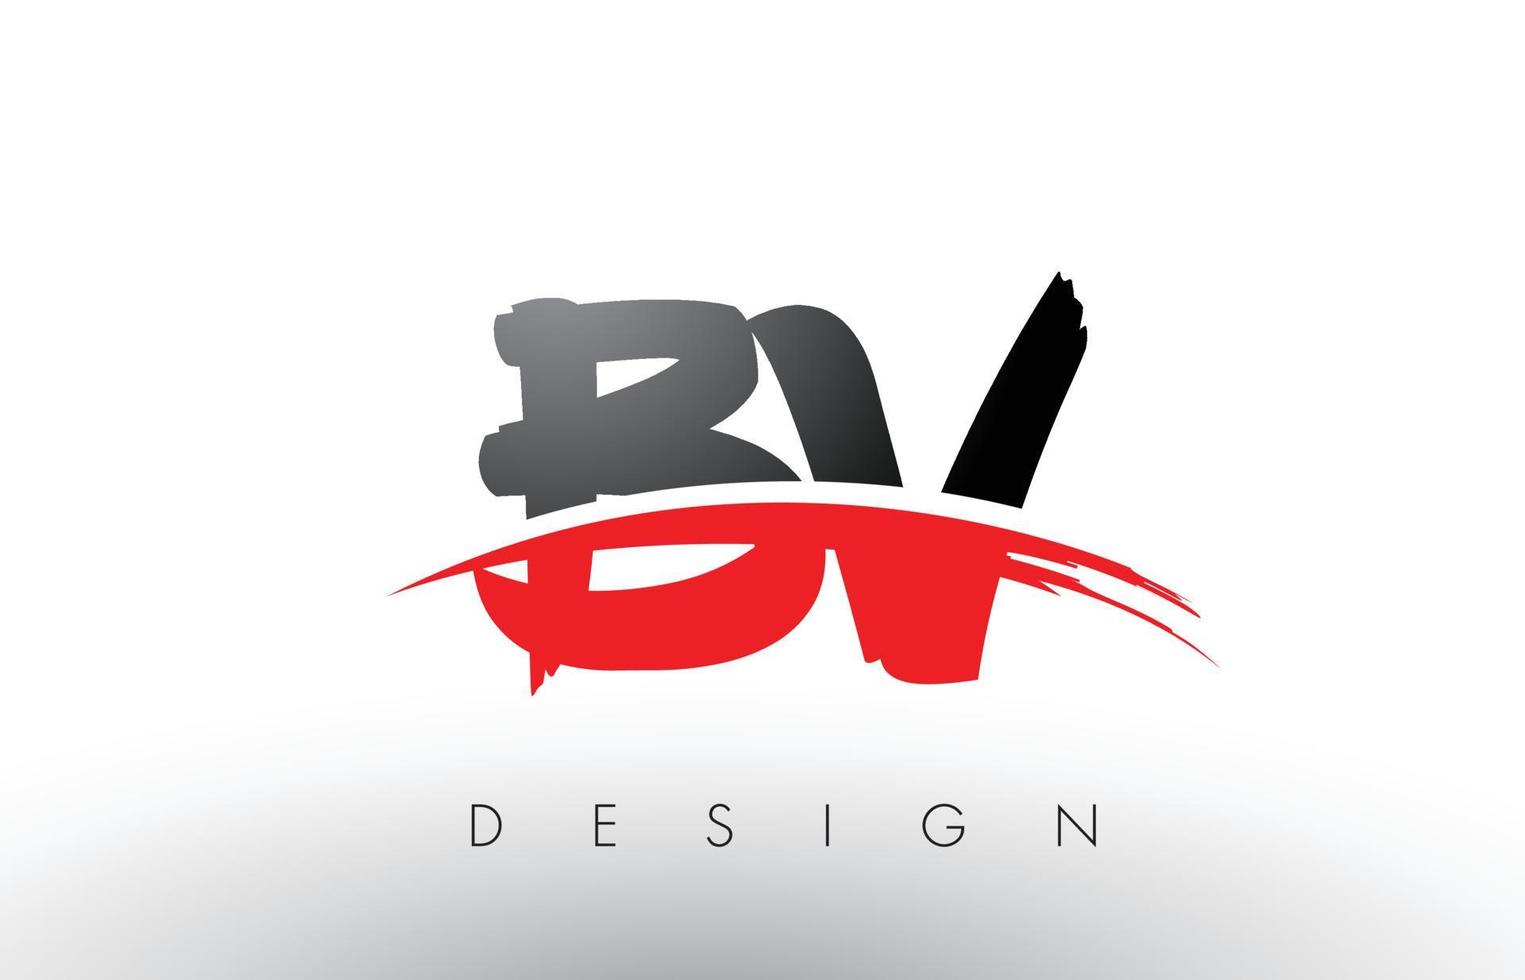 letras del logotipo del cepillo bv bv con frente de cepillo swoosh rojo y negro vector